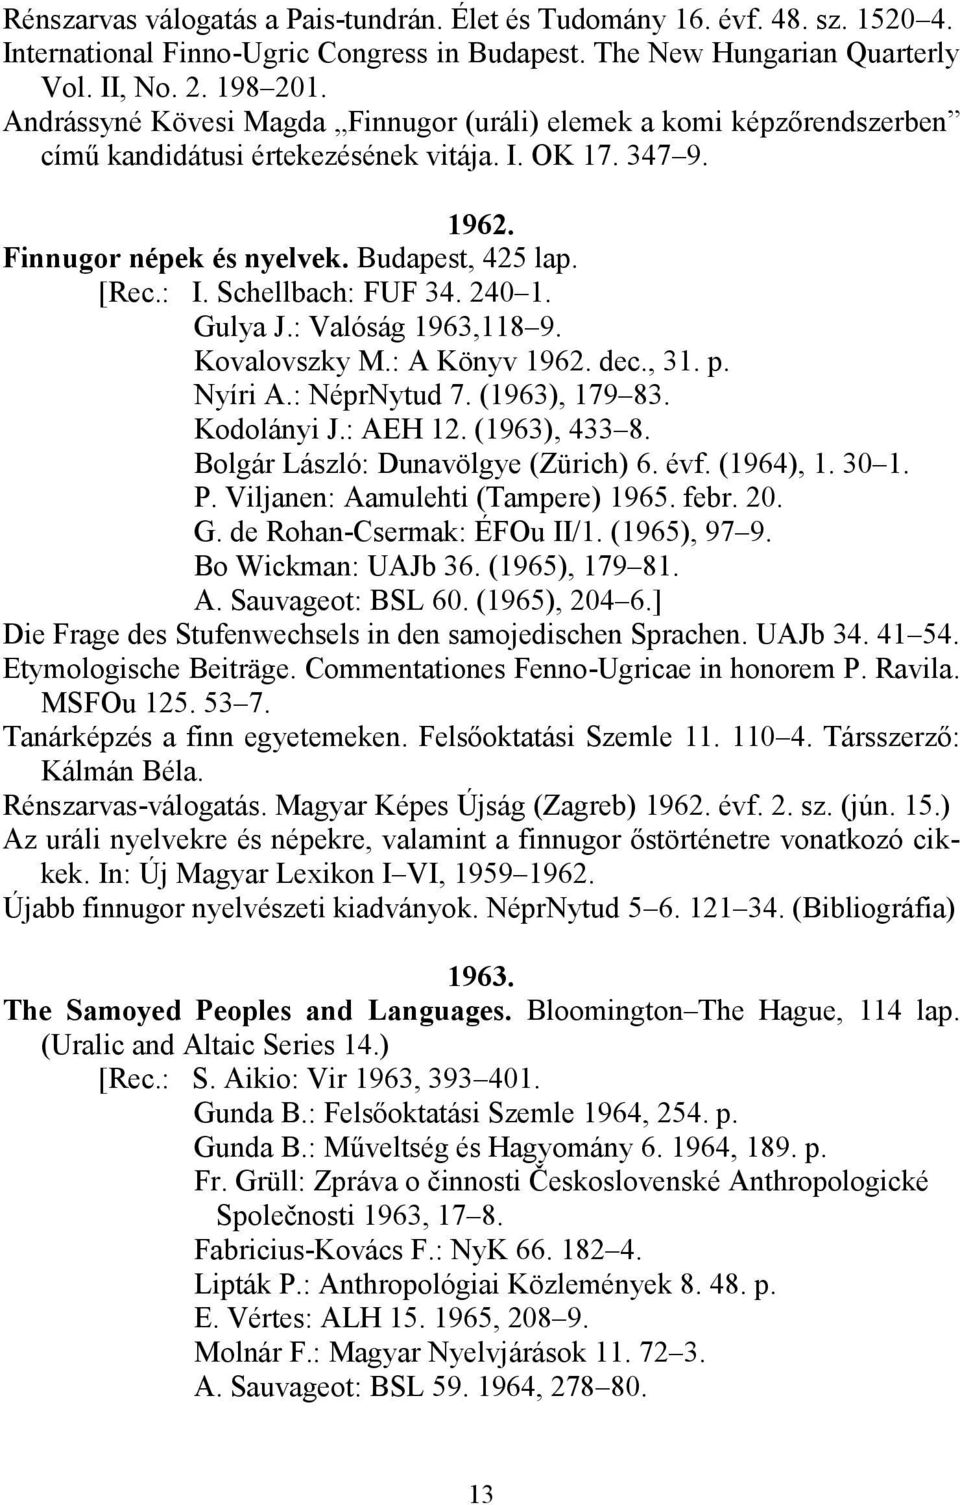 Schellbach: FUF 34. 240 1. Gulya J.: Valóság 1963,118 9. Kovalovszky M.: A Könyv 1962. dec., 31. p. Nyíri A.: NéprNytud 7. (1963), 179 83. Kodolányi J.: AEH 12. (1963), 433 8.